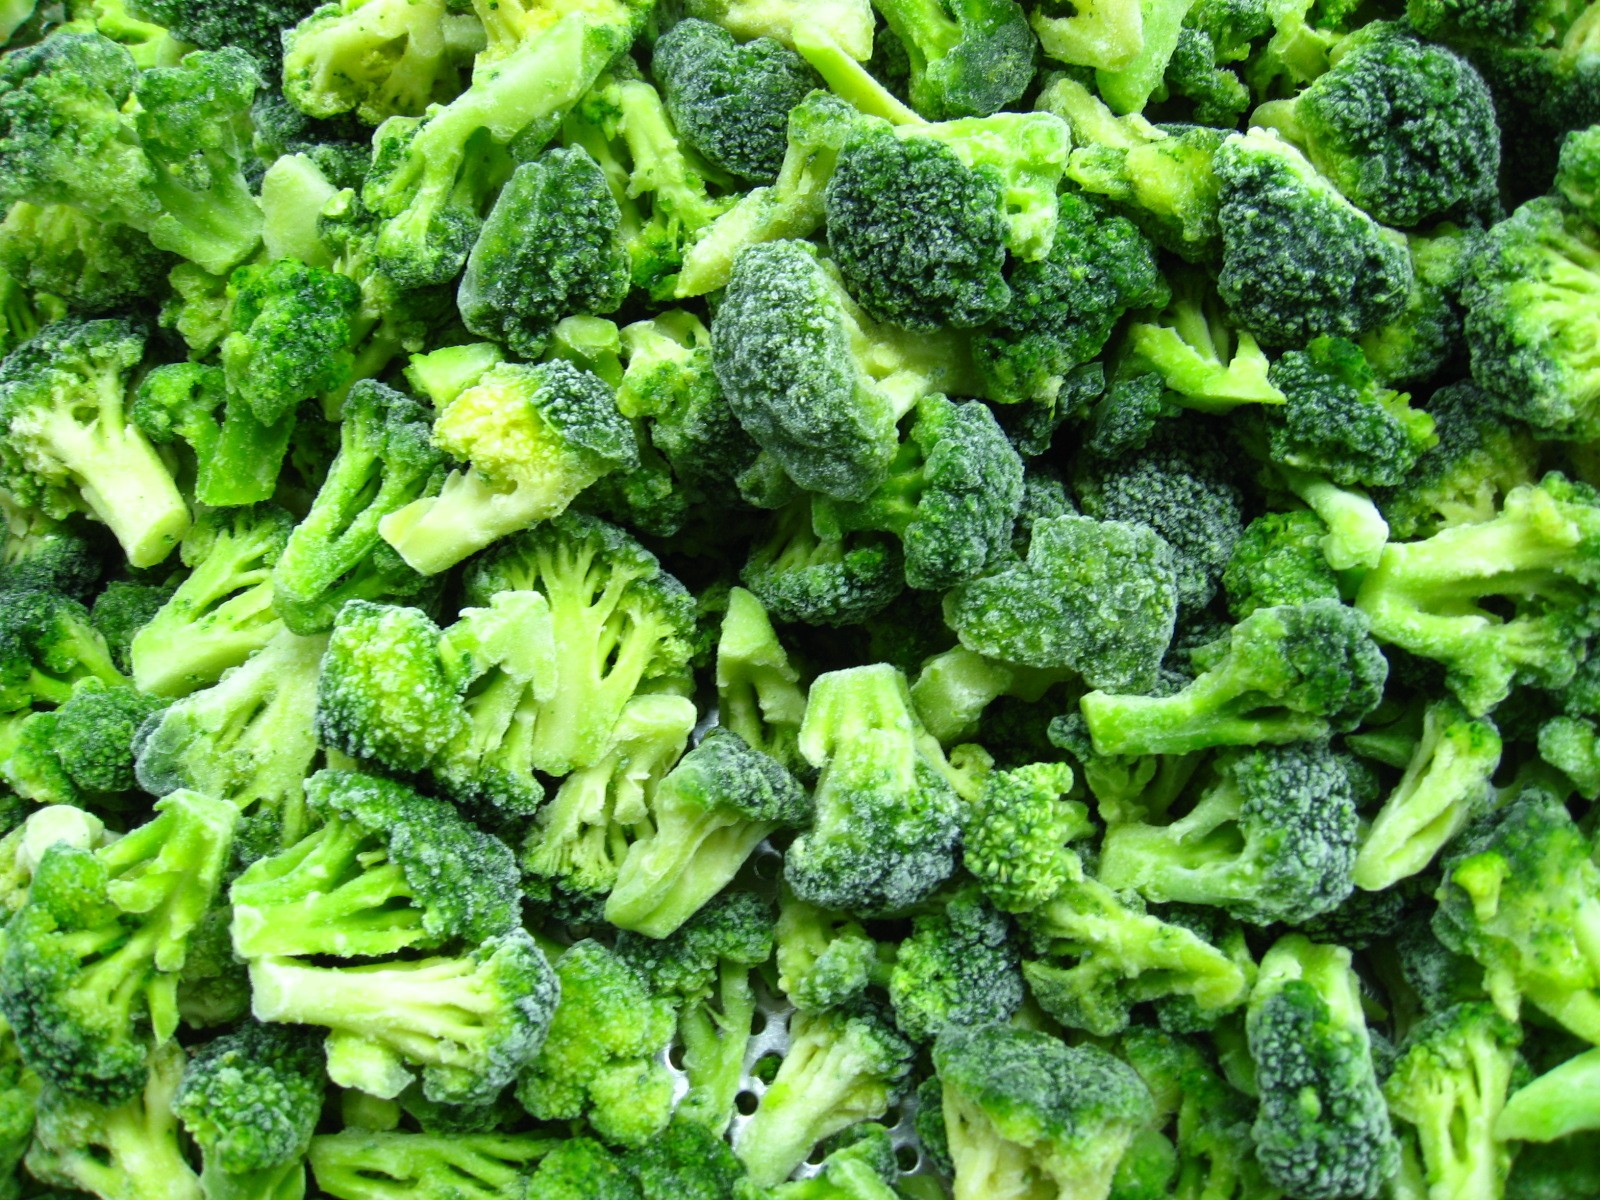 IQF Frozen Orgainc Broccoli